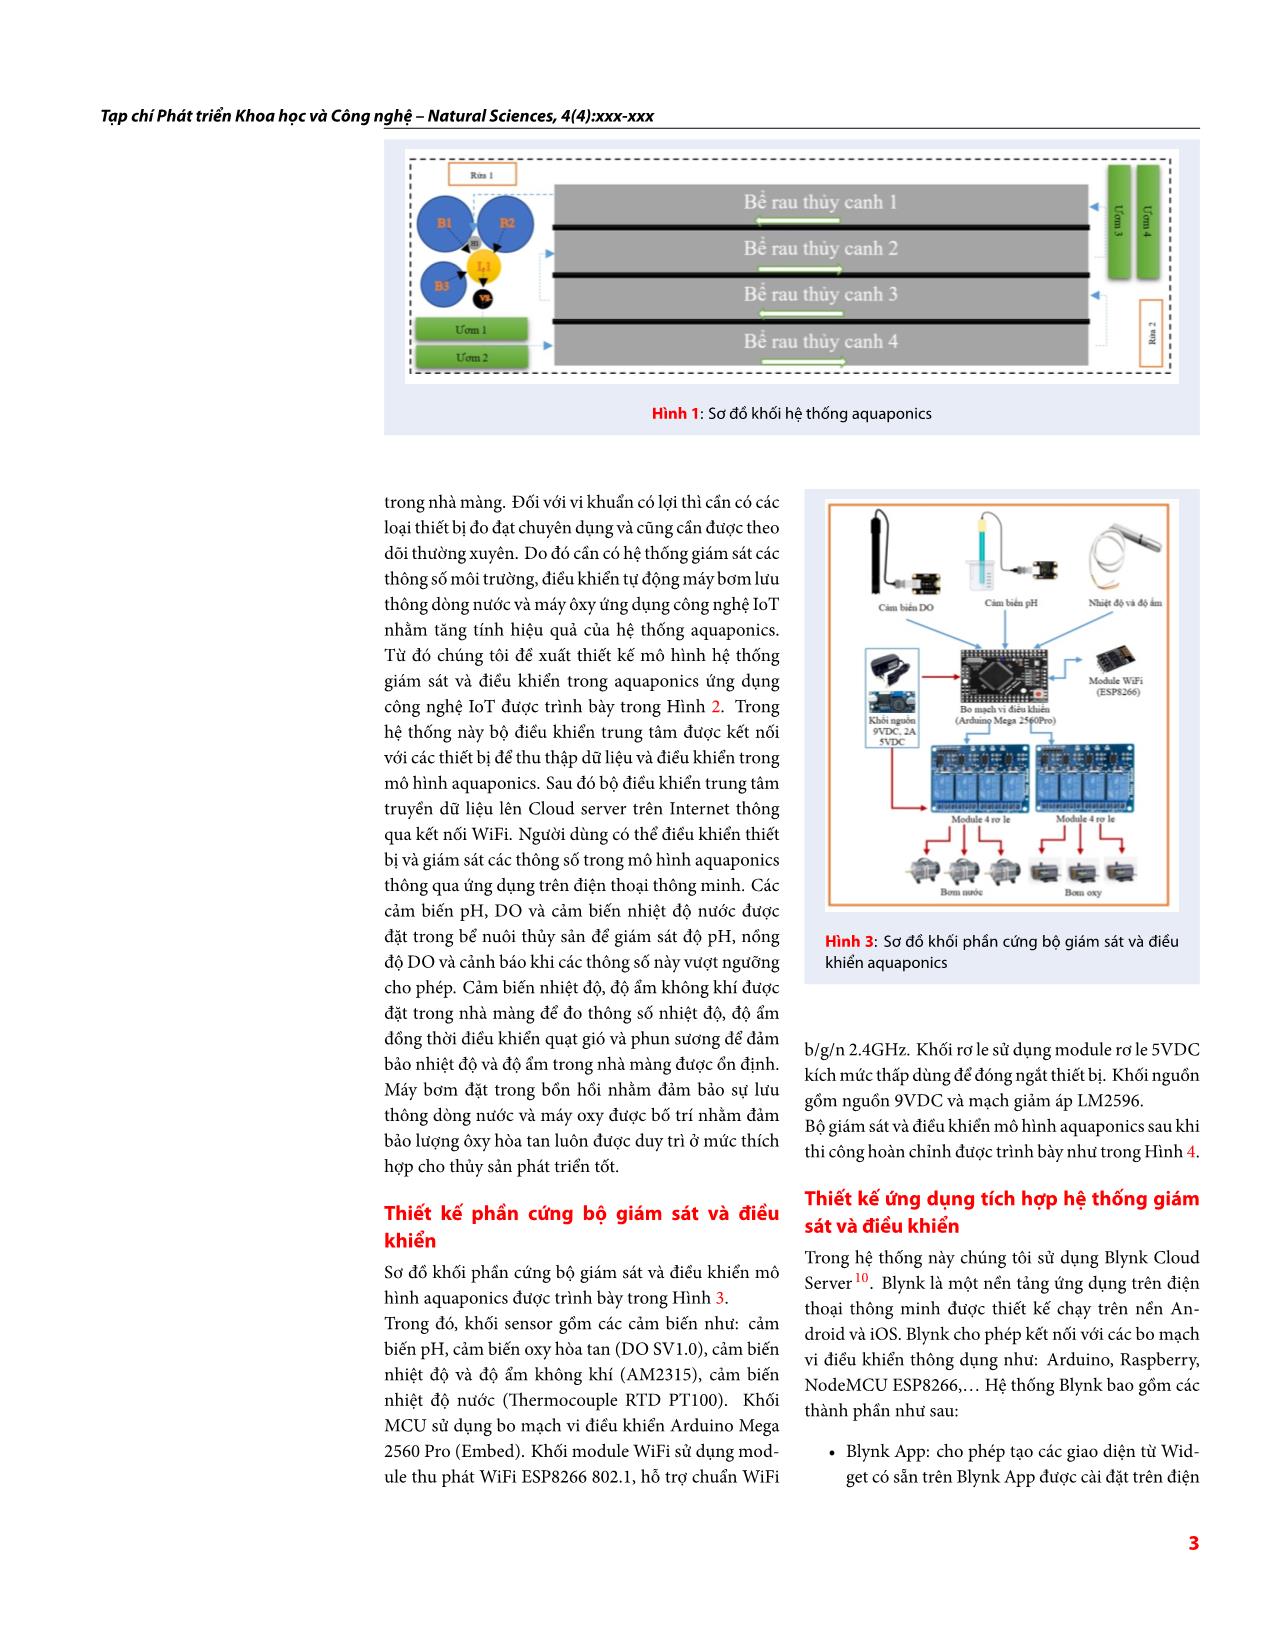 Thiết kế hệ thống giám sát và điều khiển mô hình Aquaponics dựa trên công nghệ IoT trang 3